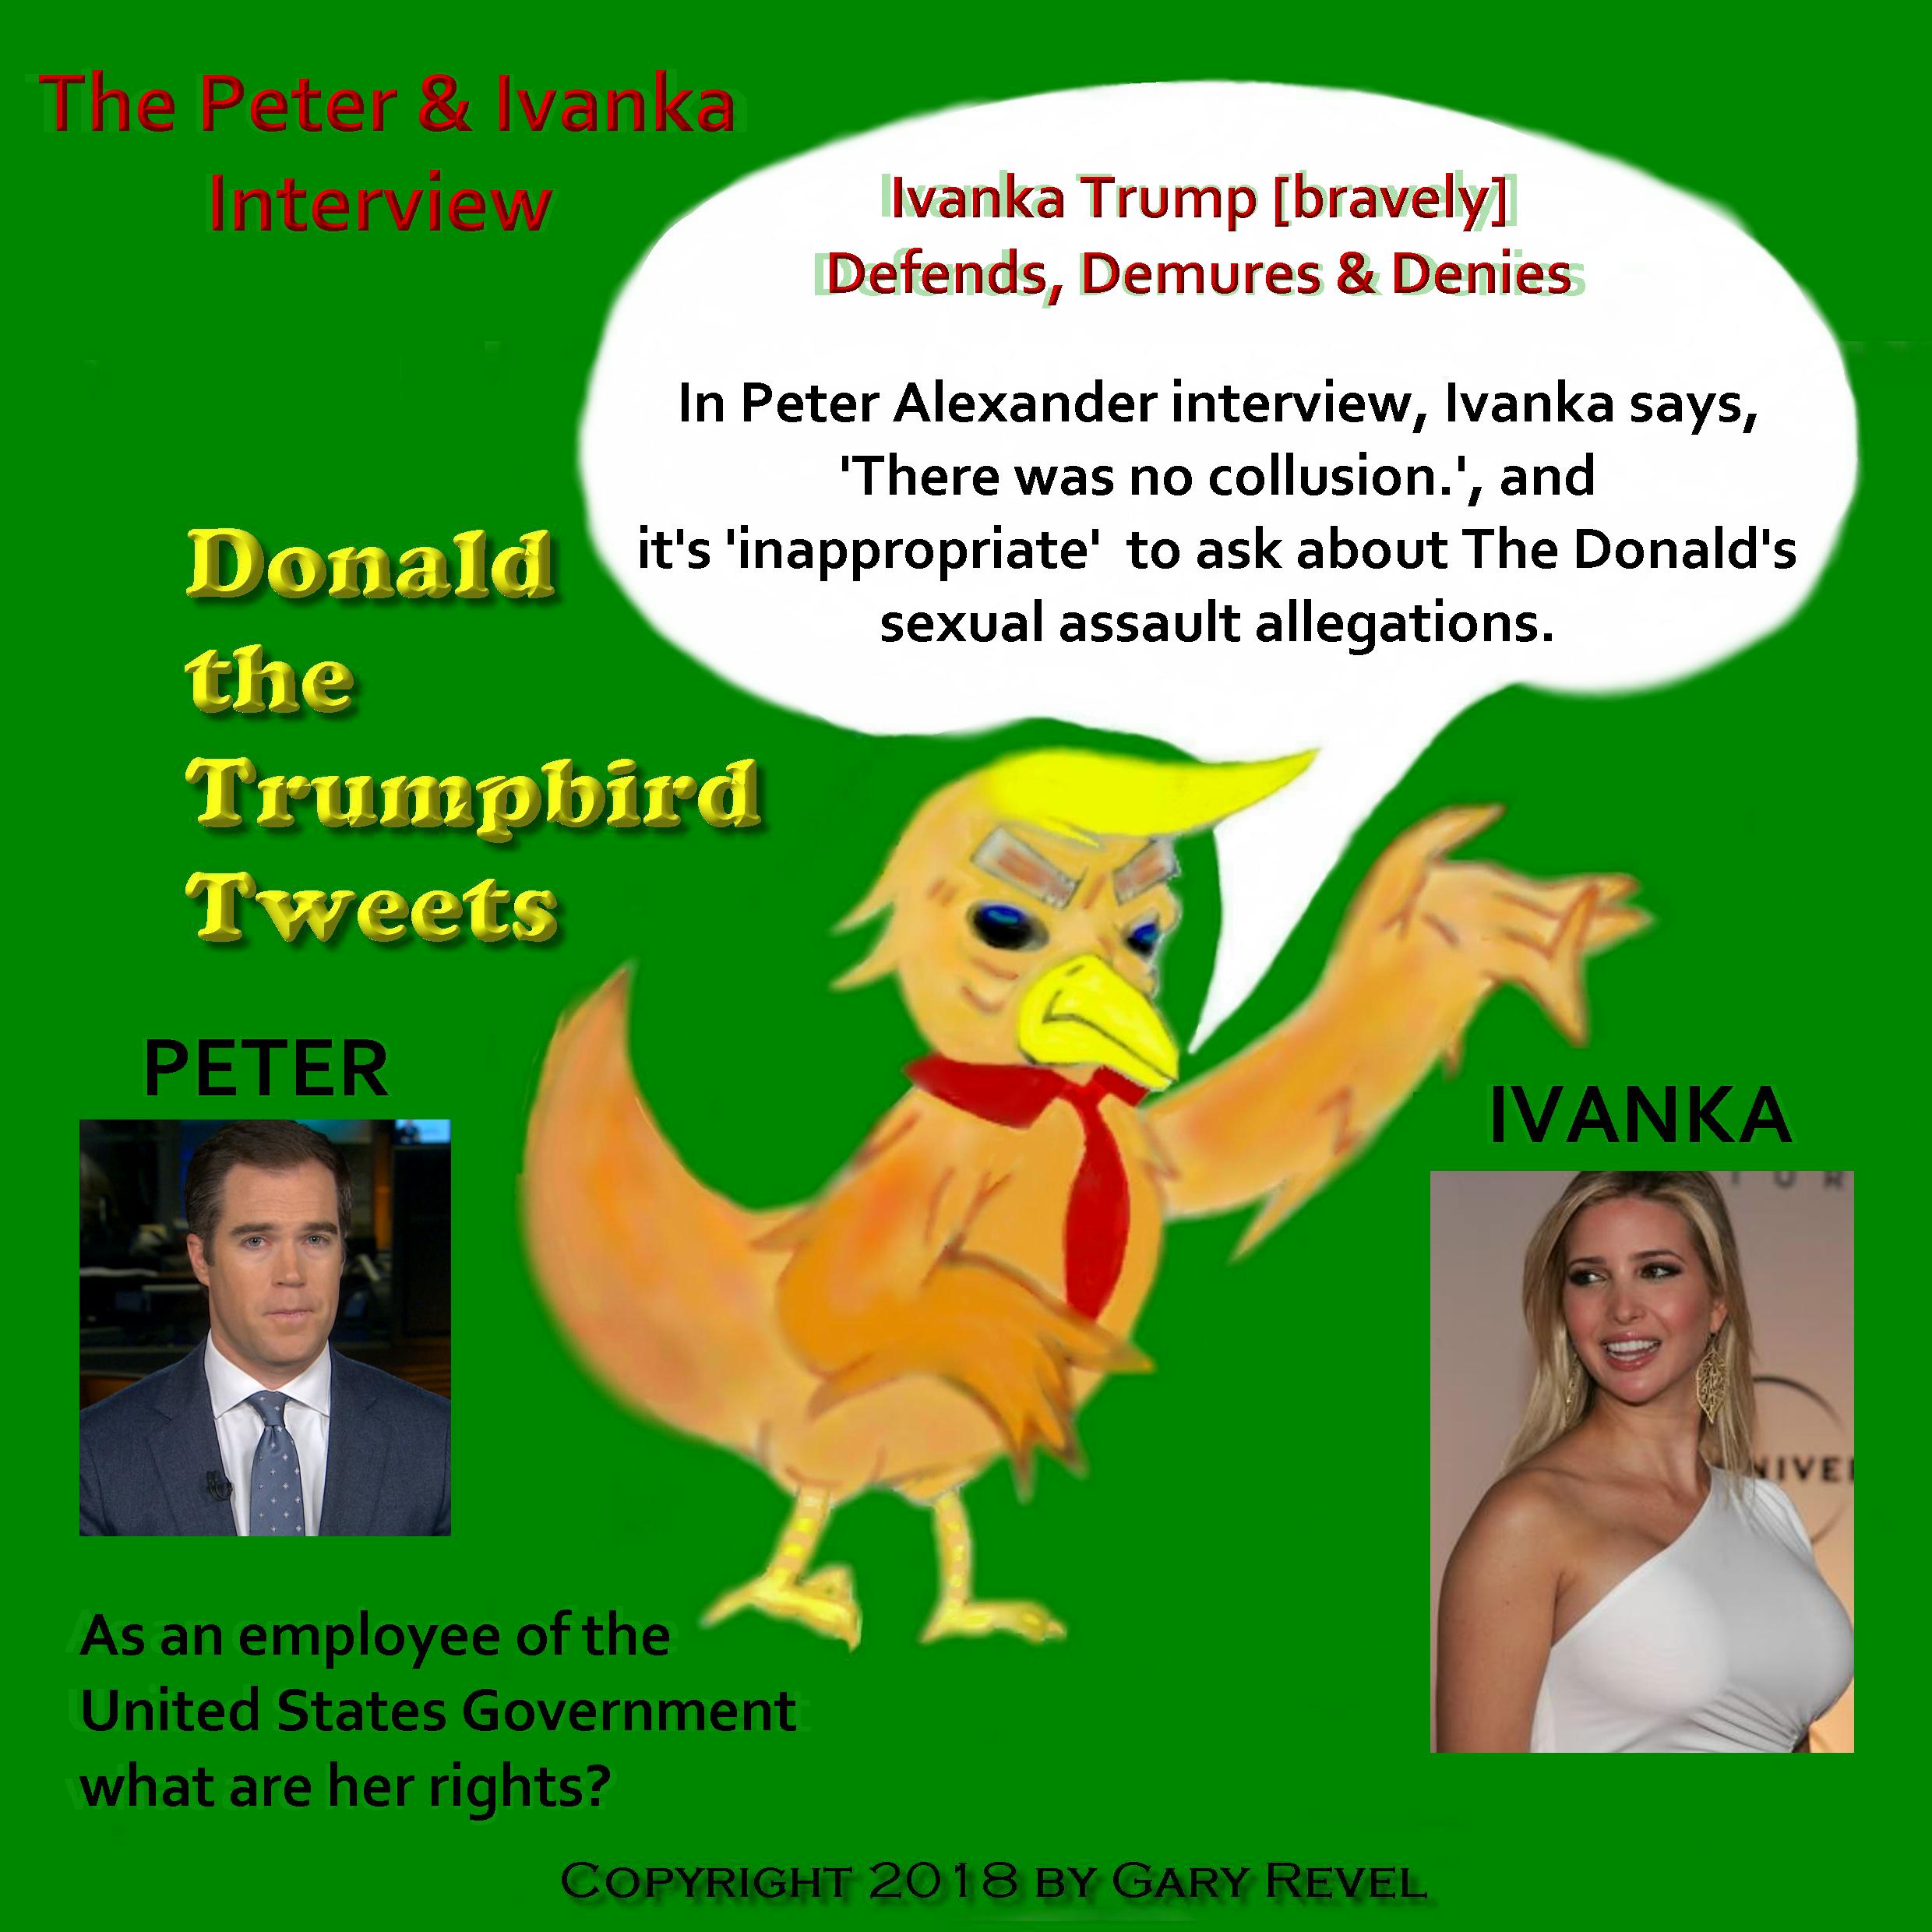 Donald the Trumpbird tweets Peter Alexander Interview of Ivanka Trump?